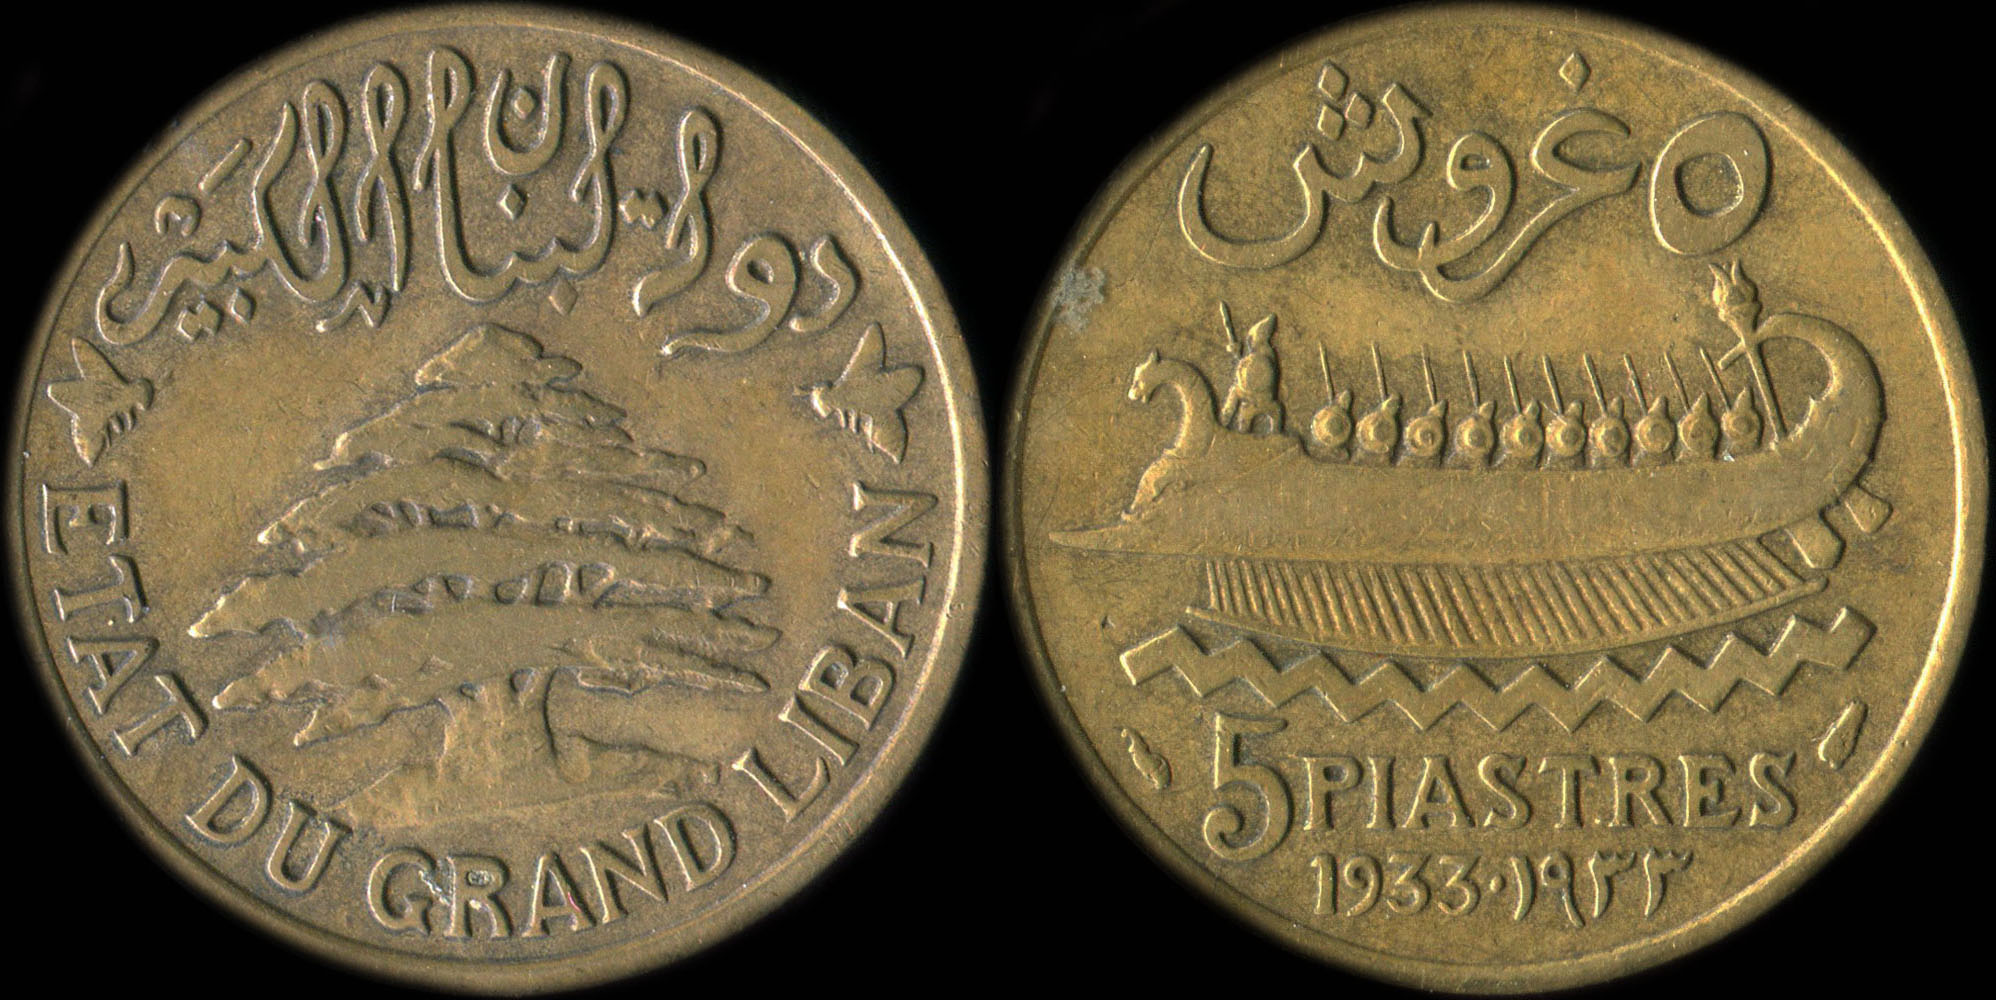 Pièce de 5 piastres 1933 type à la trirème - Etat du Grand Liban